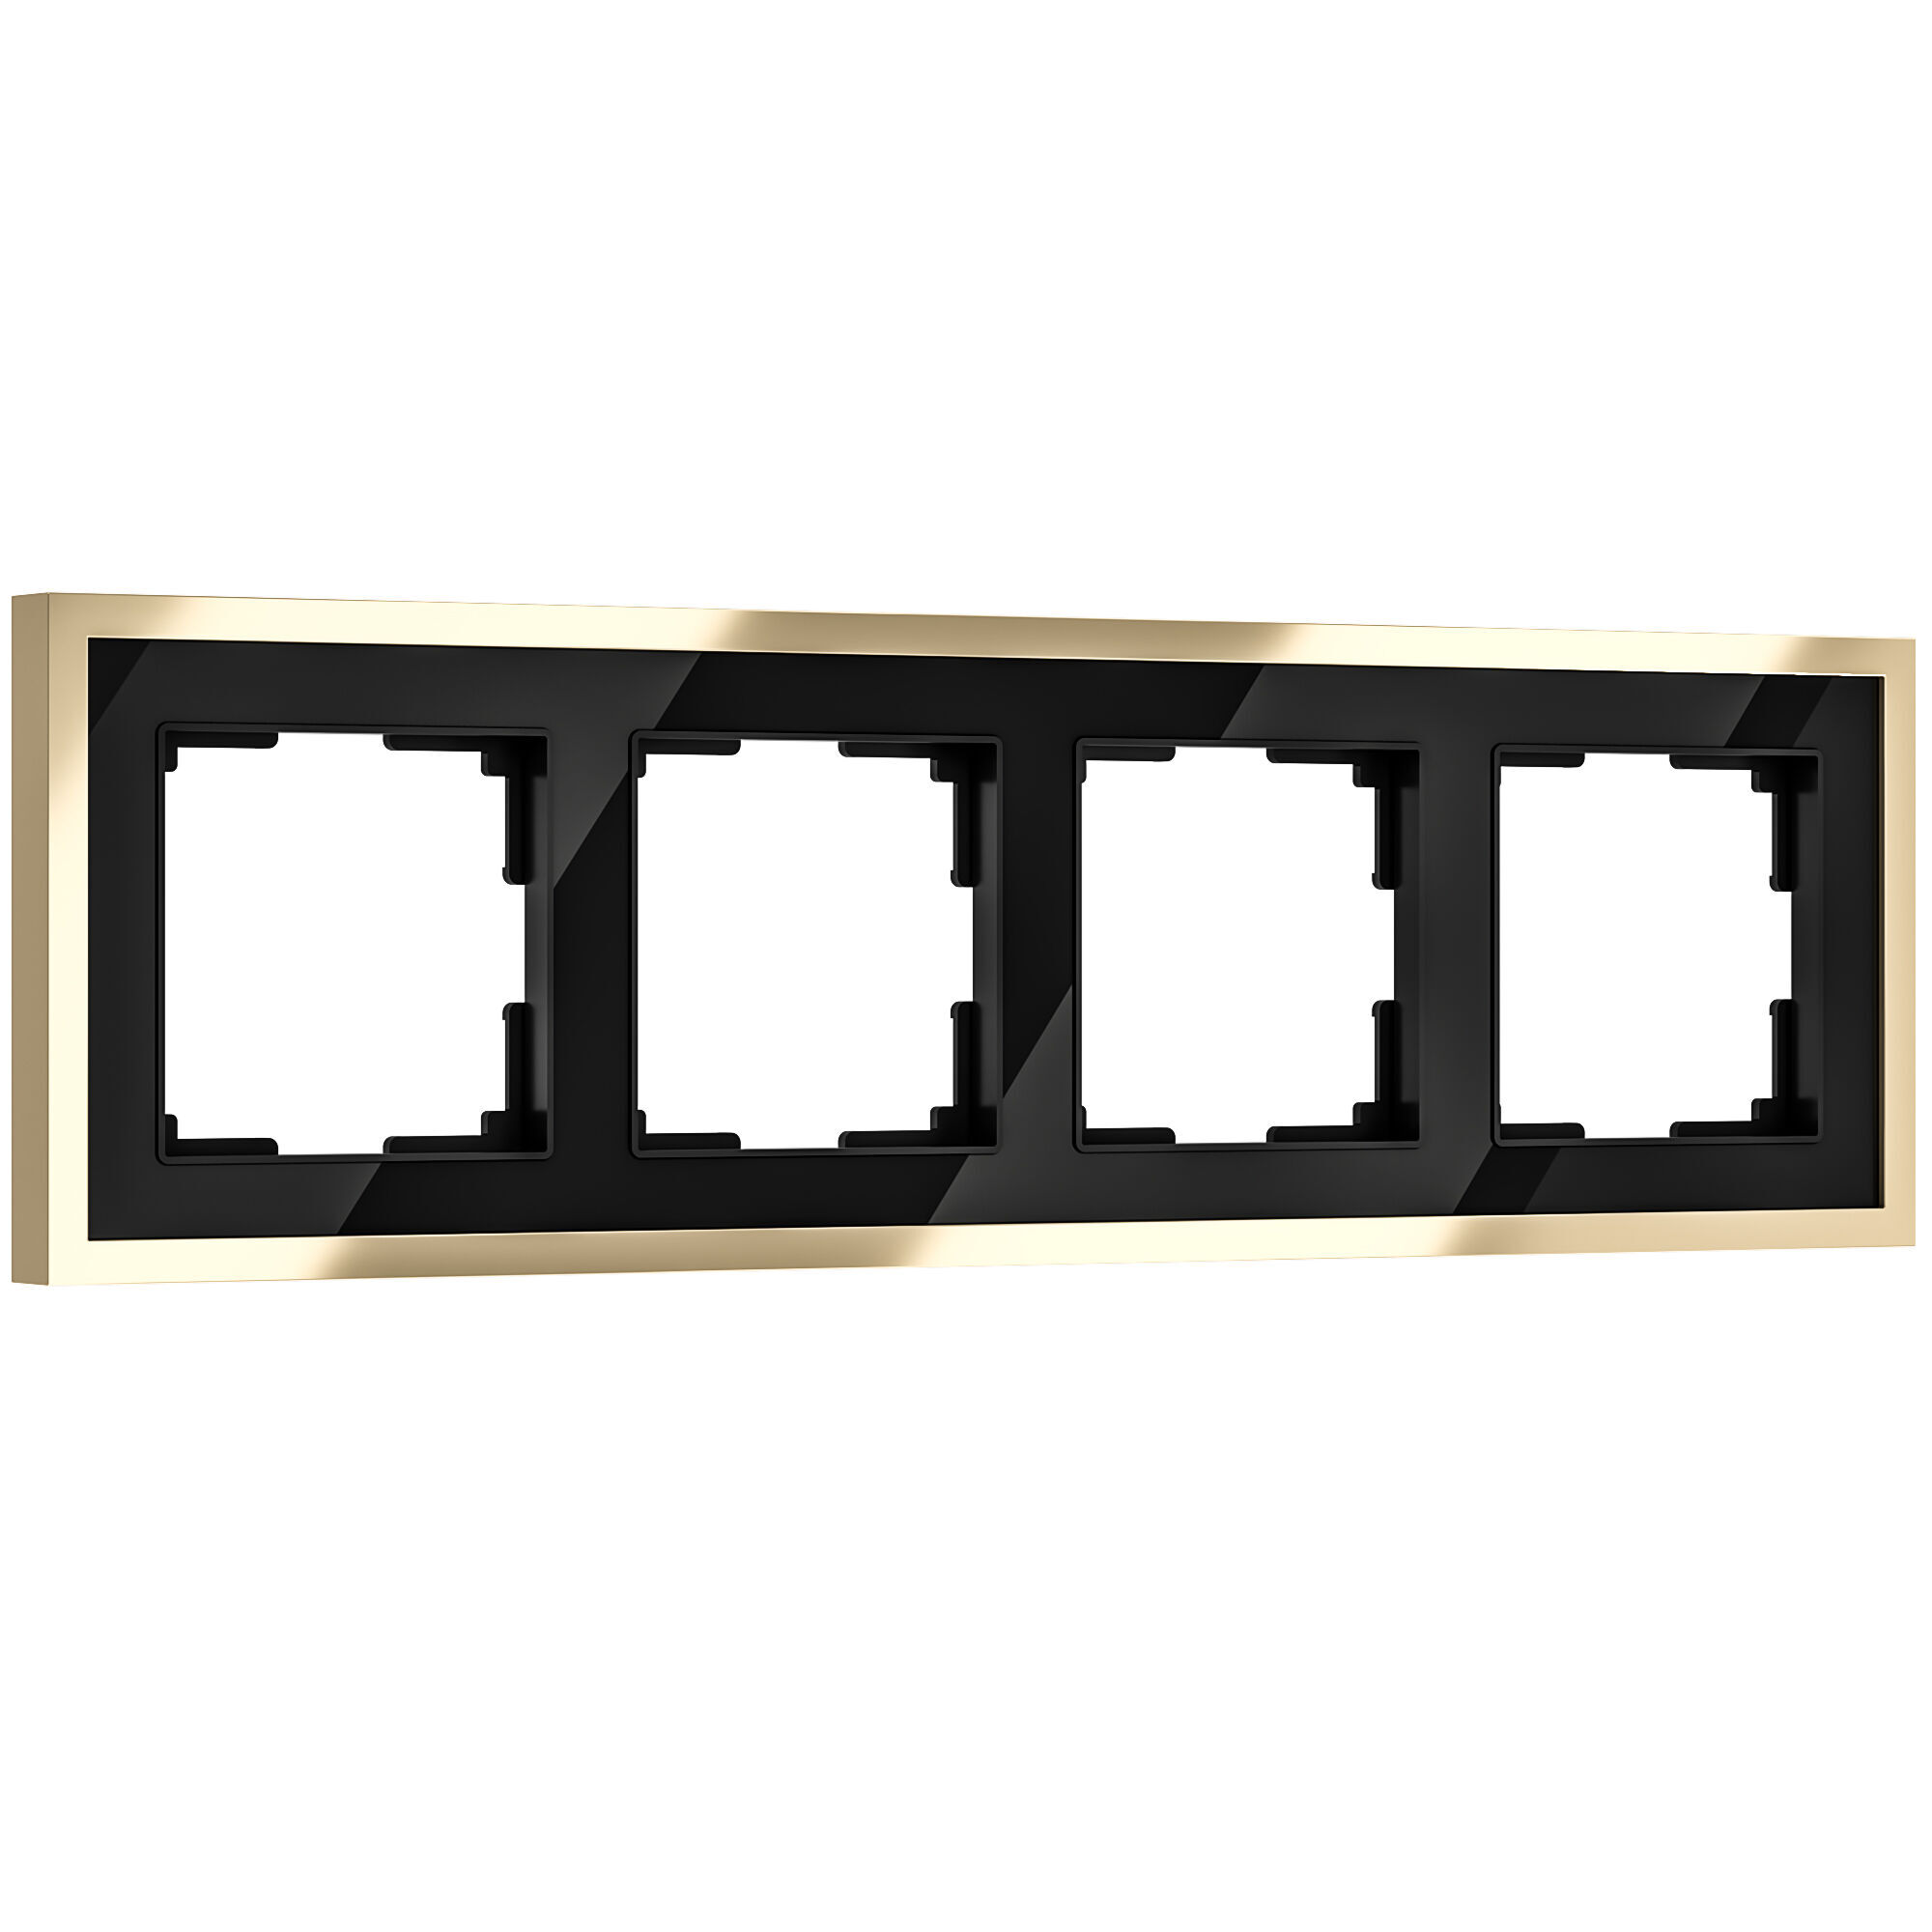 Рамка на 4 поста Werkel Baguette W0042852 черный и латунь для розетки и выключателя рамка для розетки выключателя на 4 поста werkel w0041932 snabb слоновая кость золото